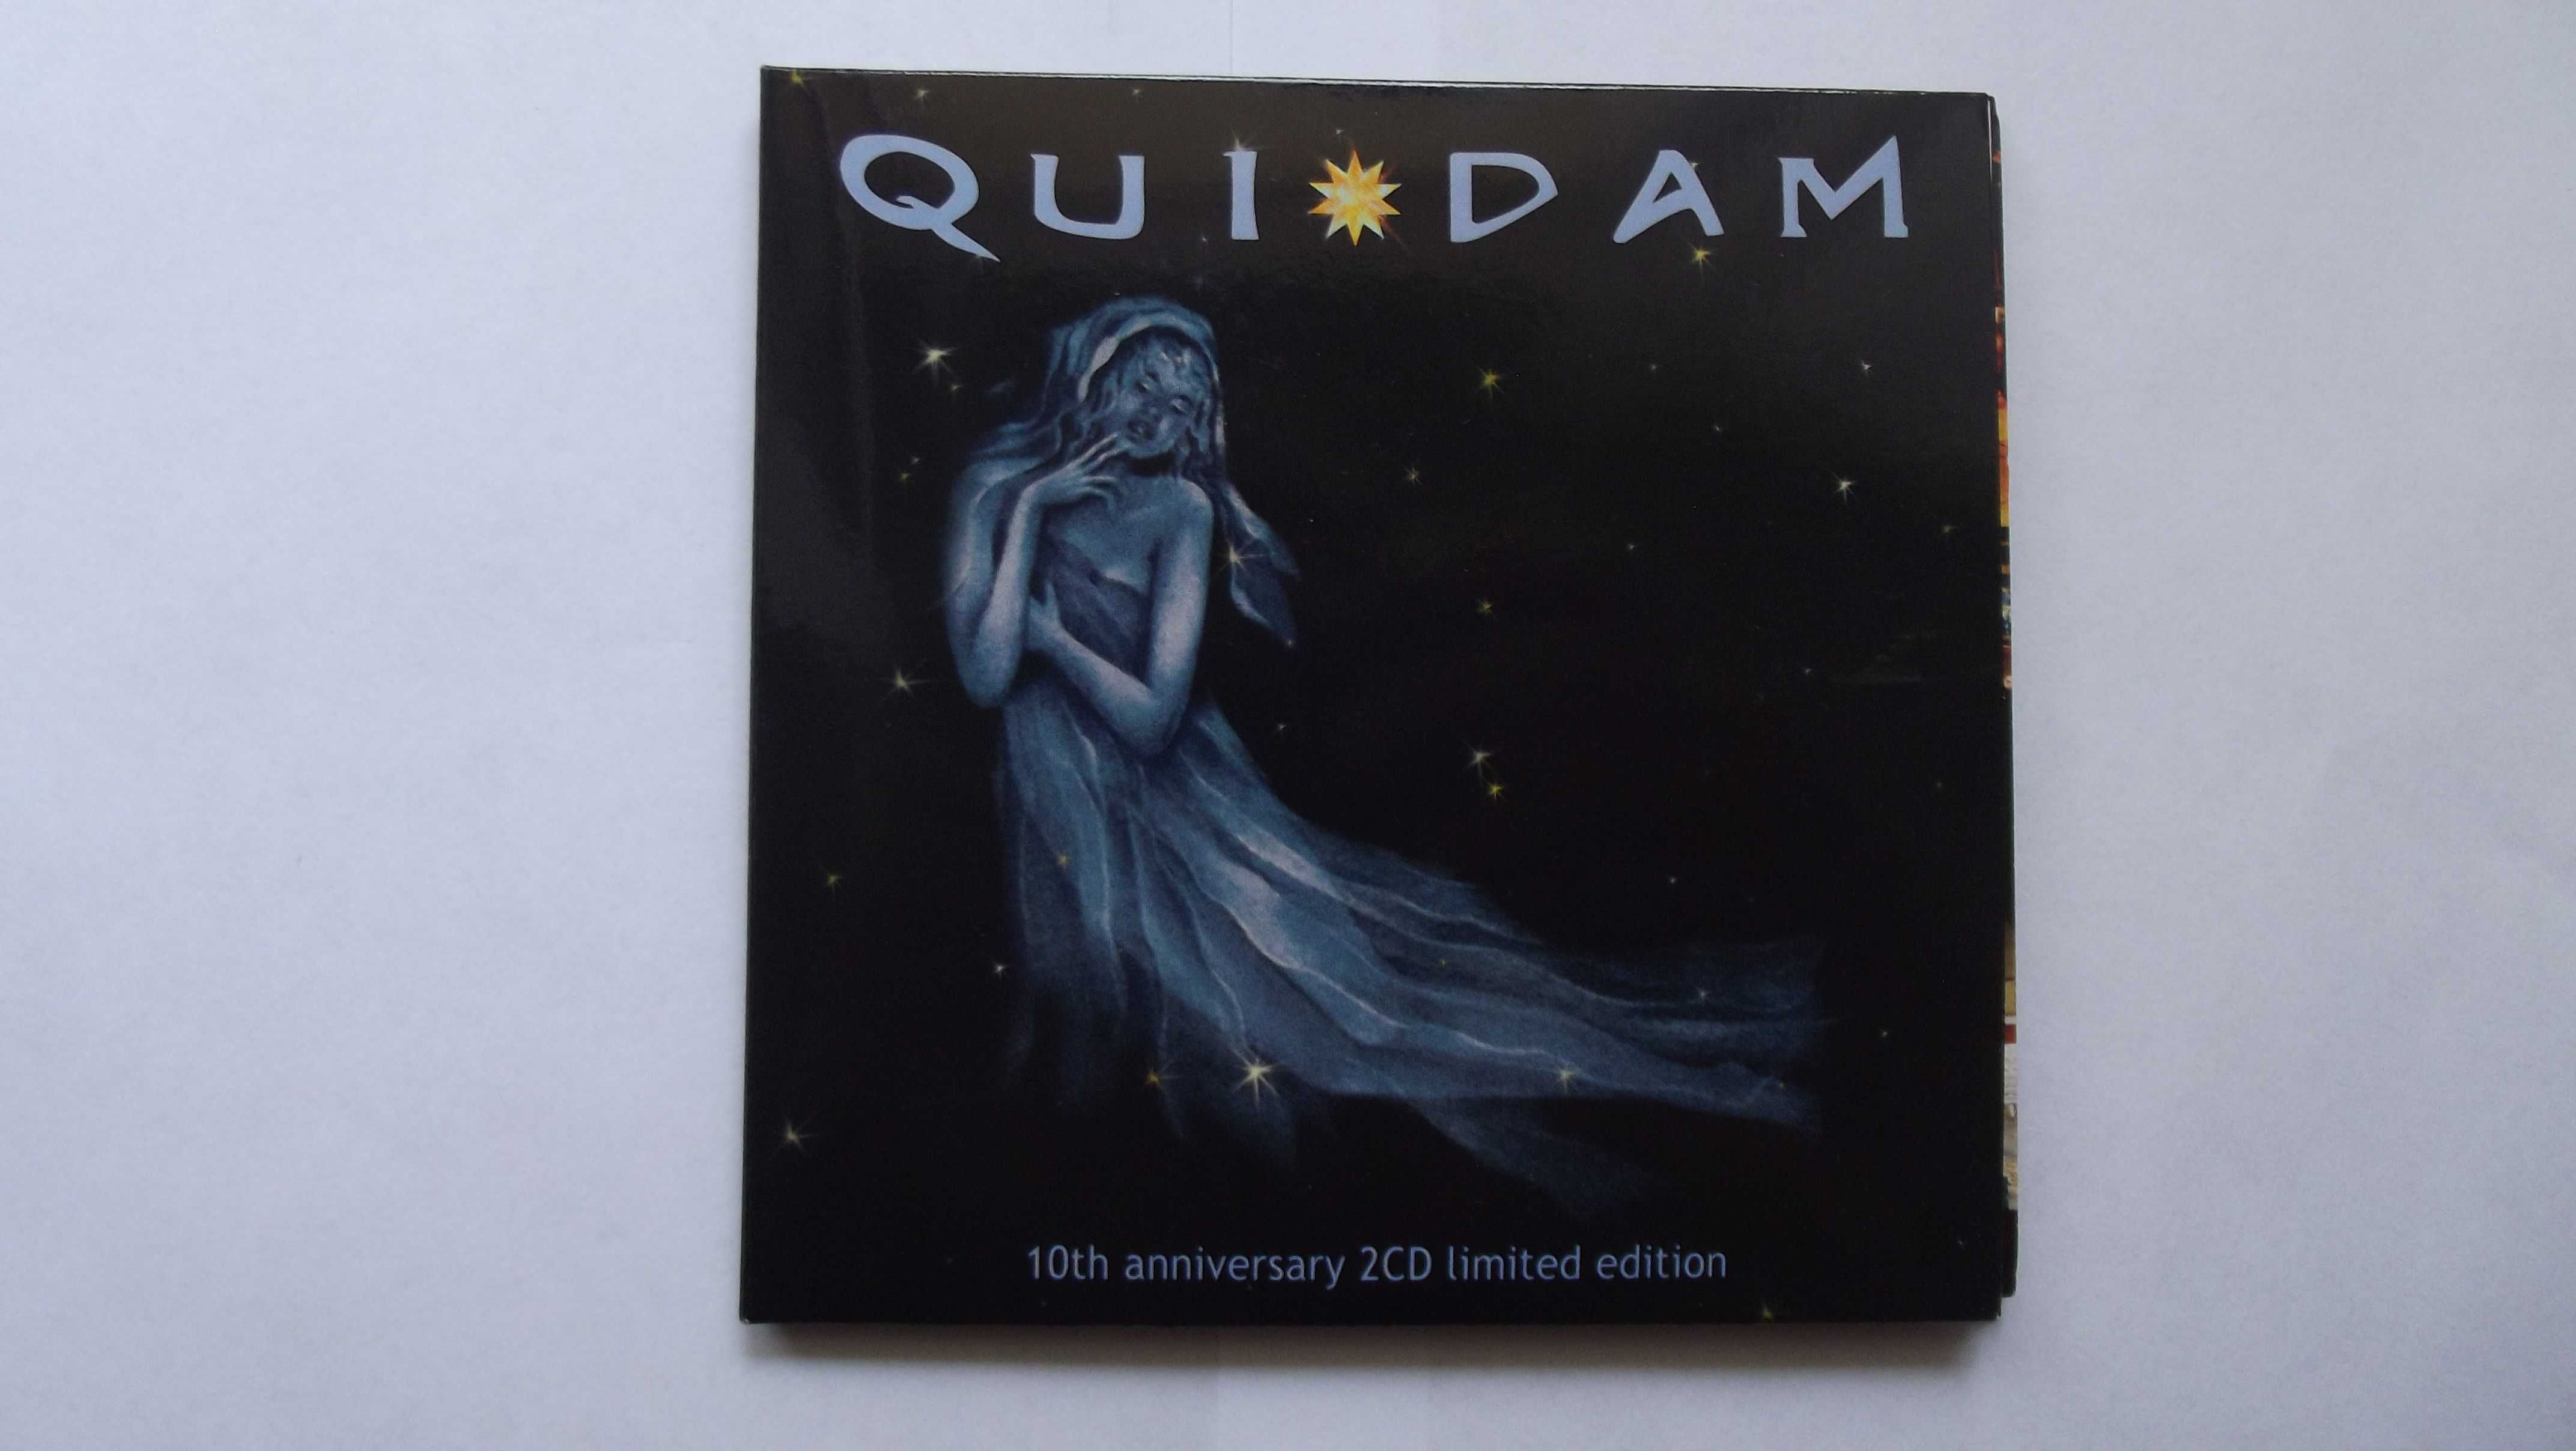 Quidam - Quidam 2cd Rock-Serwis minivinyl